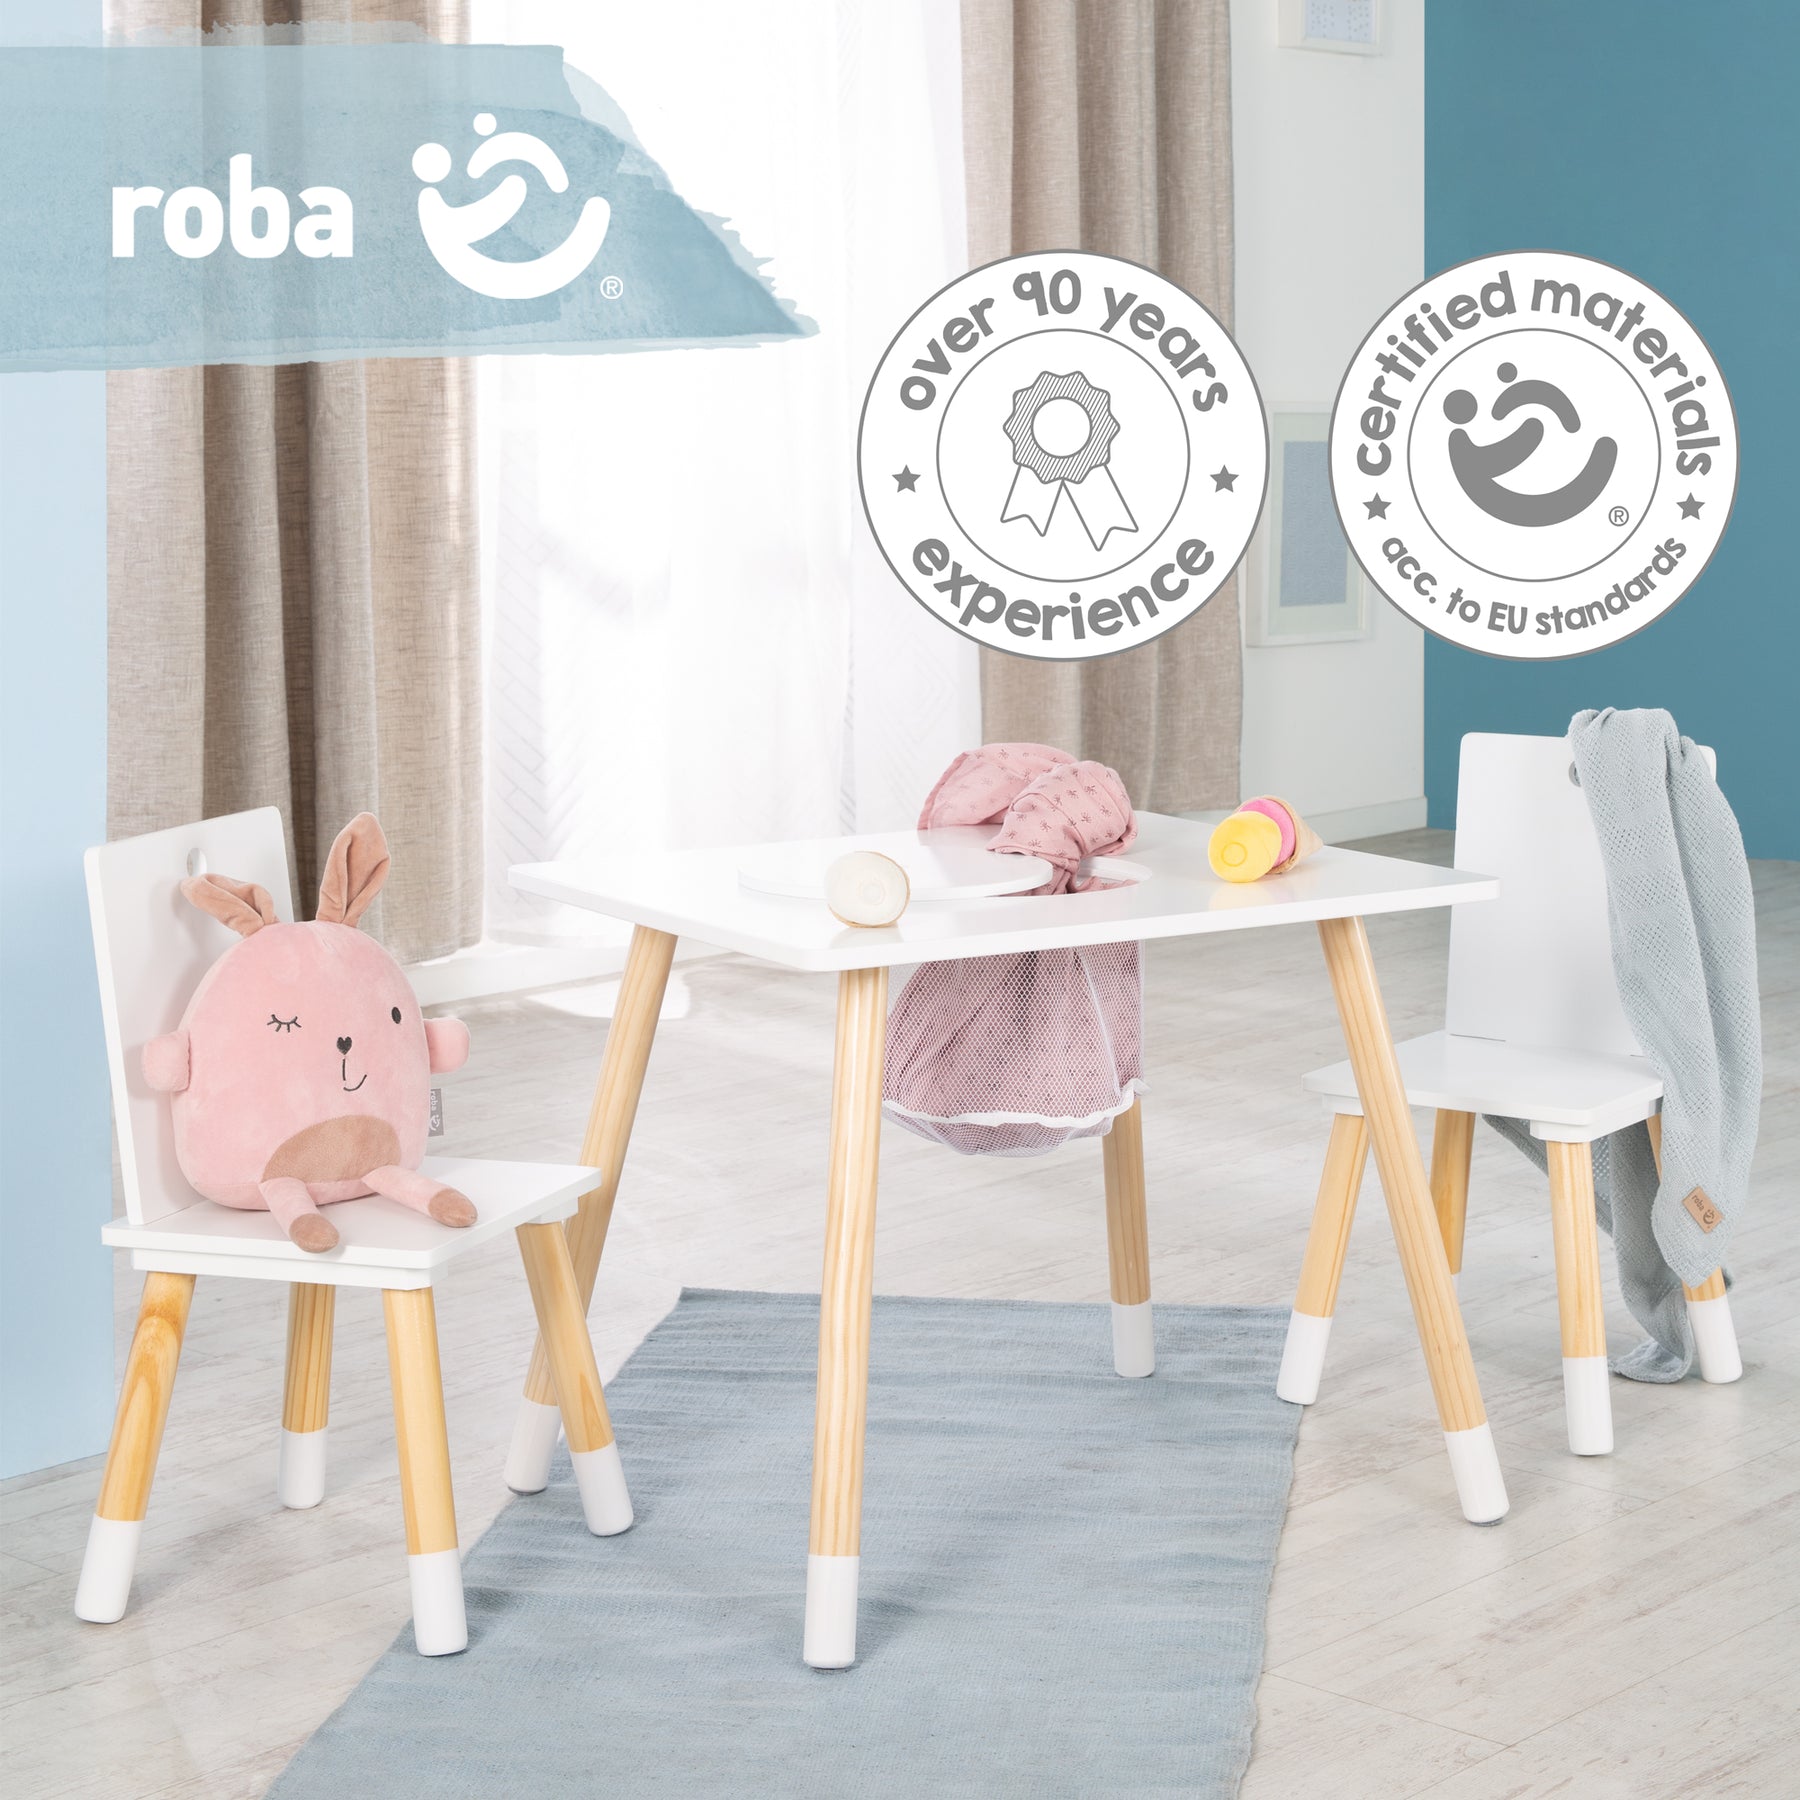 Kindersitzgruppe, Kindermöbel Set aus & kidtini 2 Tisch, Kinderstühlen GmbH 1 – Holz